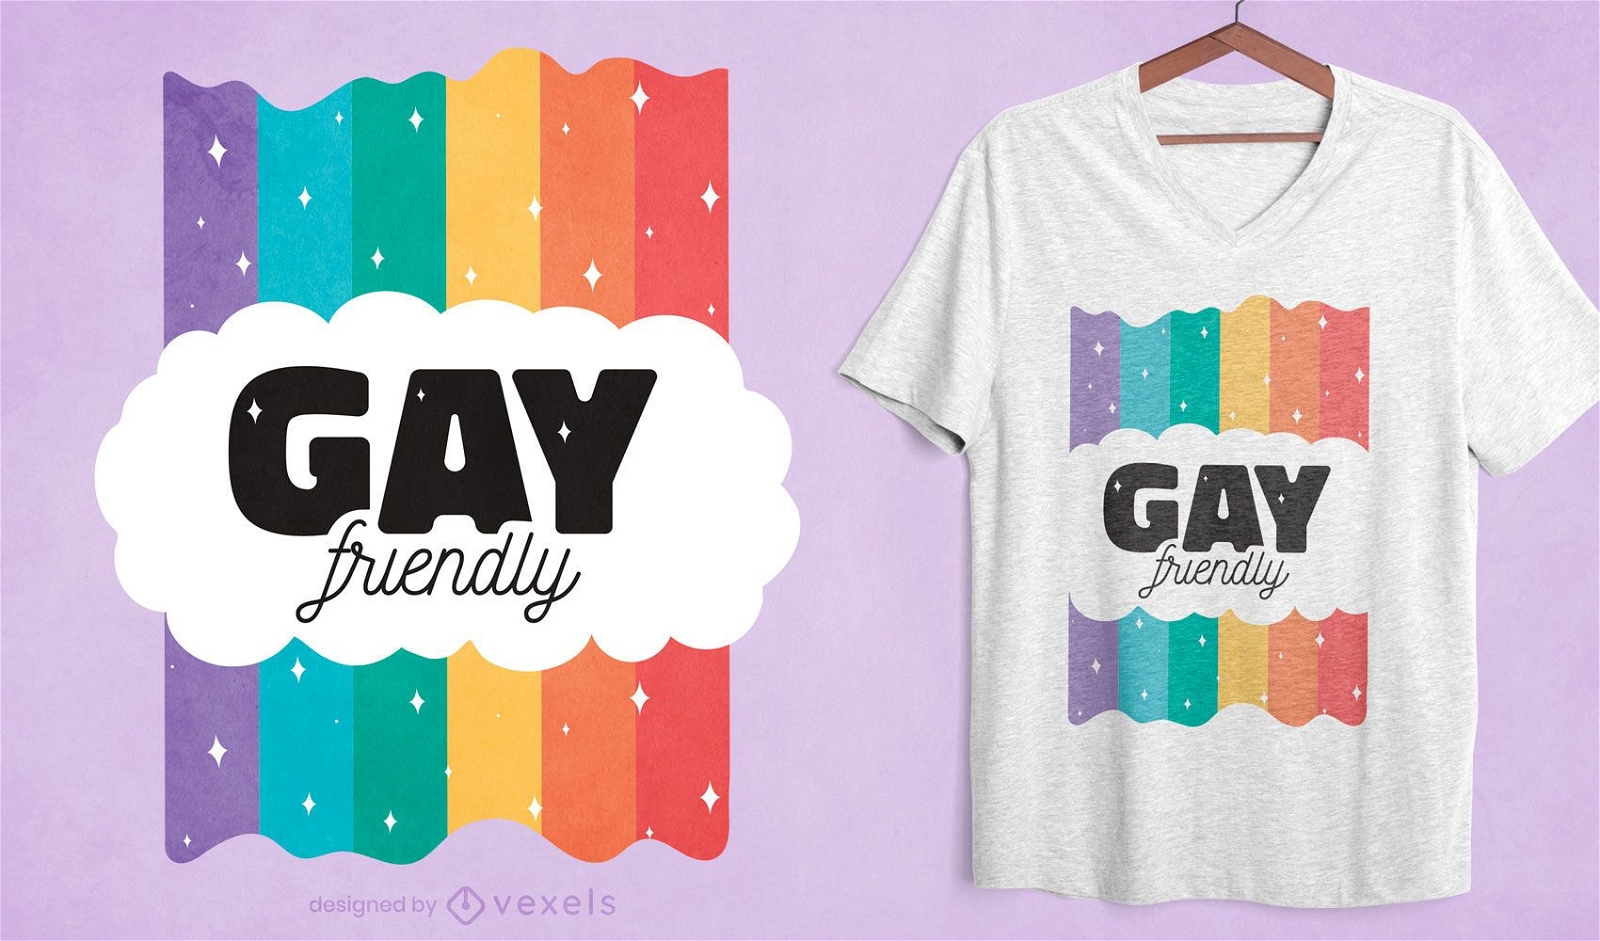 Dise?o de camiseta gay friendly